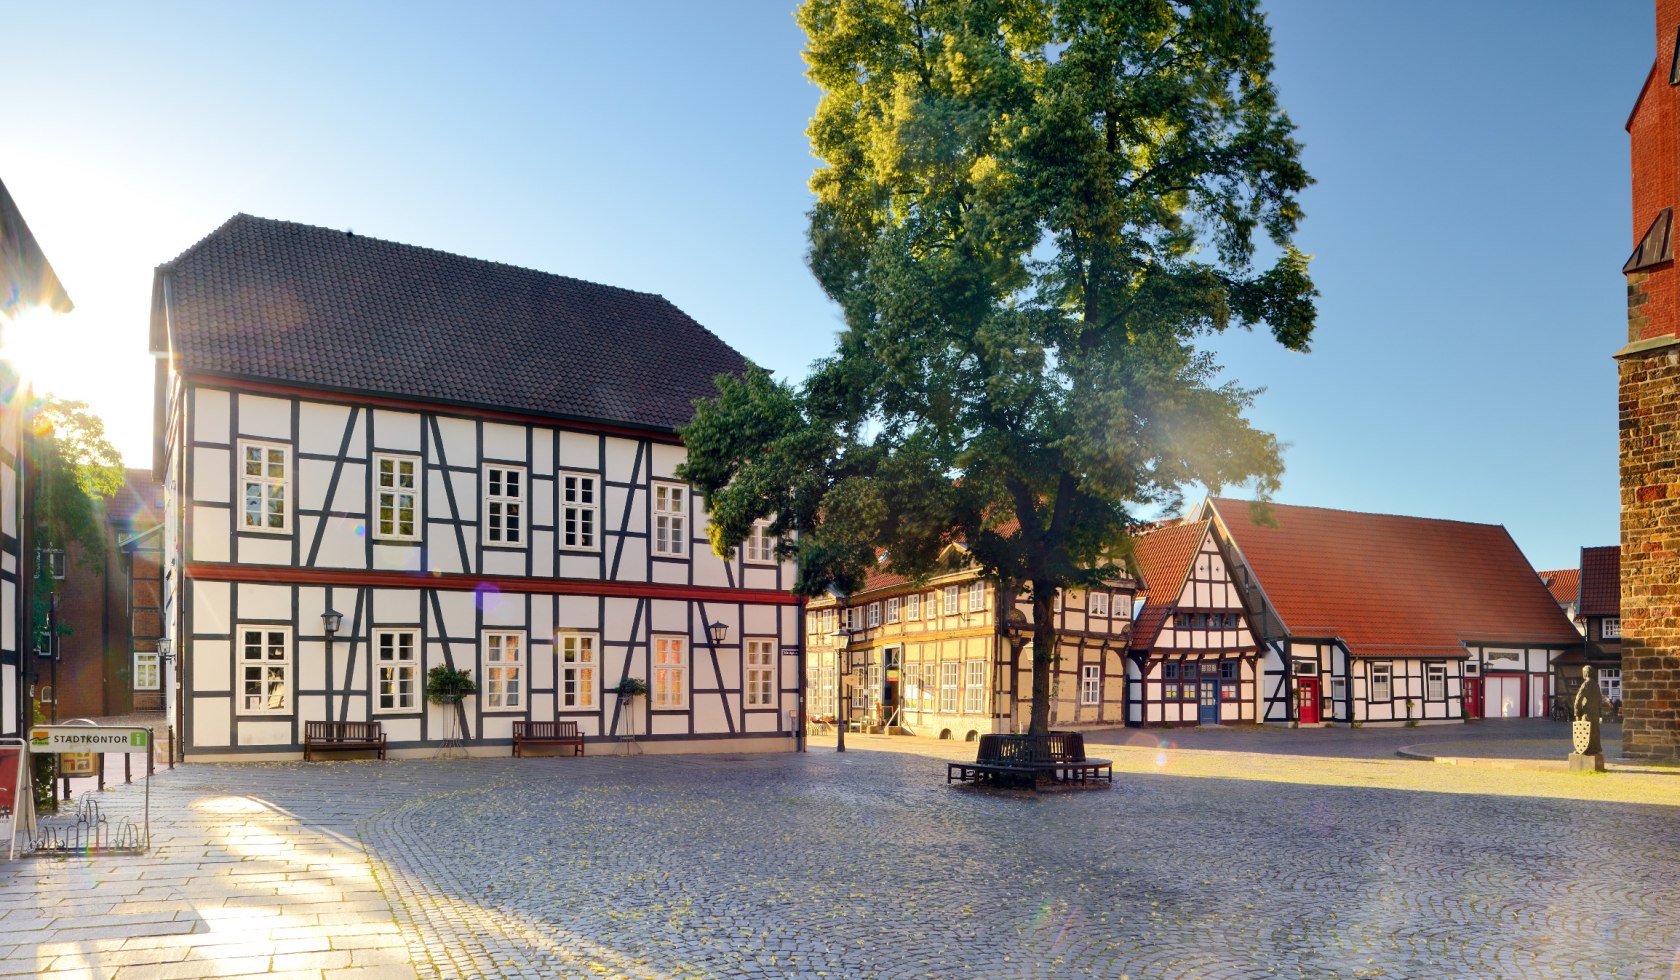 Marktplatz in Nienburg mit Fachwerkhäusern, © DZT/Carovillano